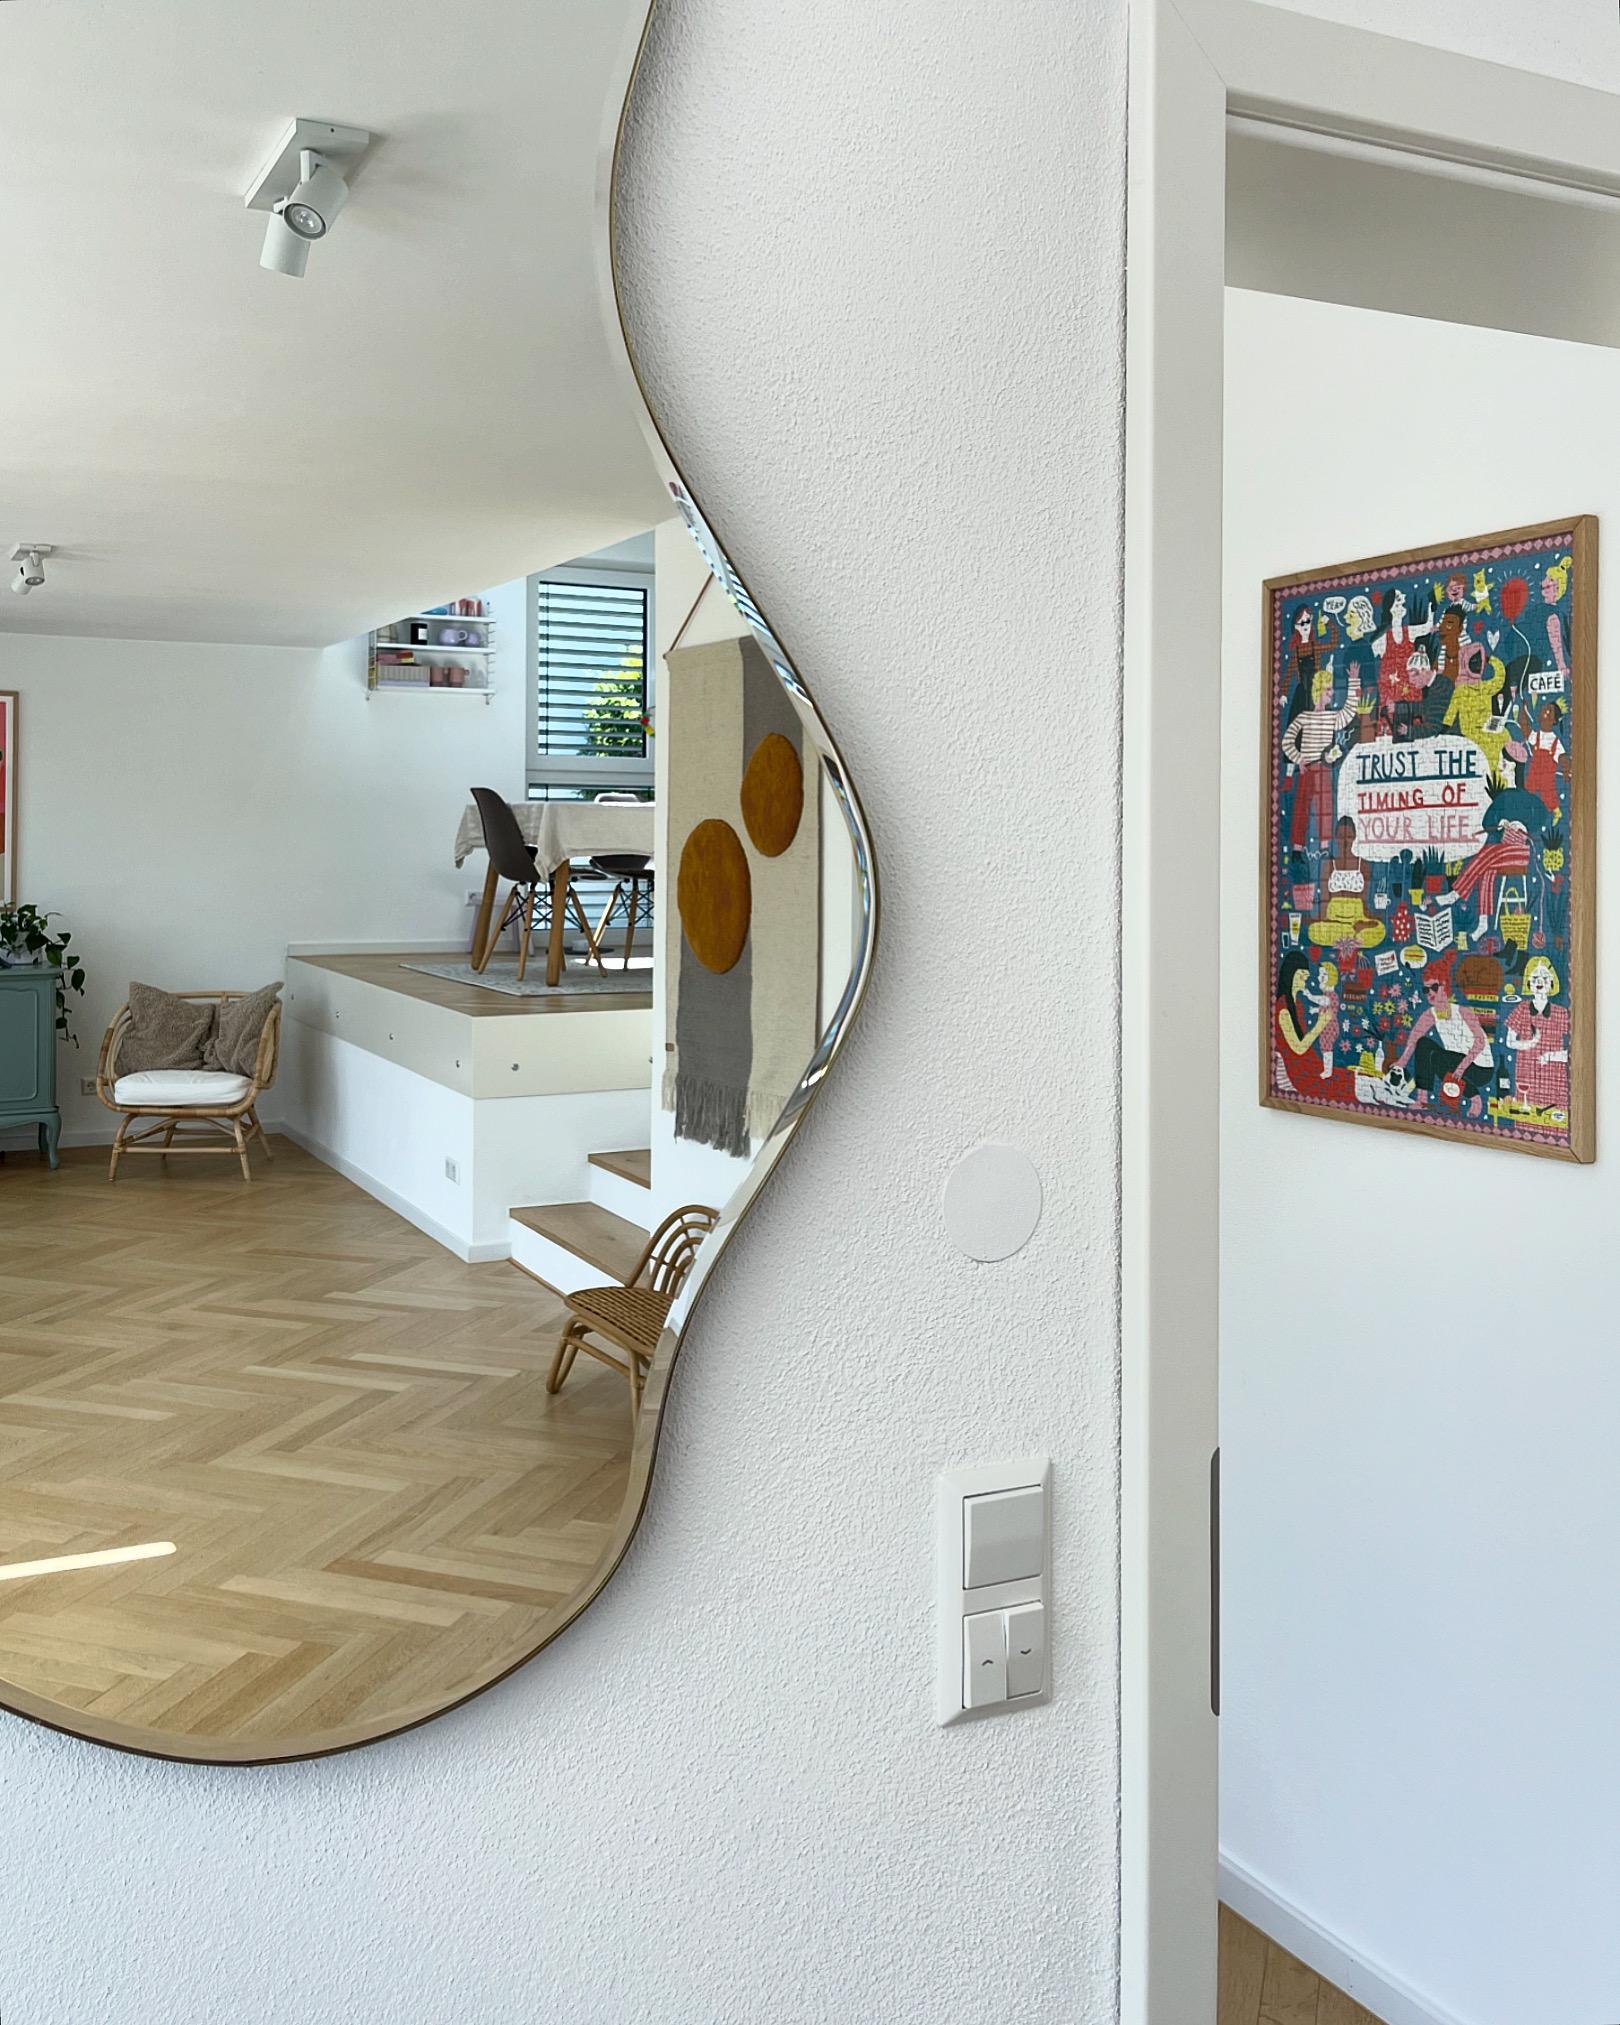 #spiegelliebe 💕 und Lieblingspuzzle hängt nun auch an der Wand. Mag ich irgendwie... 
#wohnzimmer #interio 